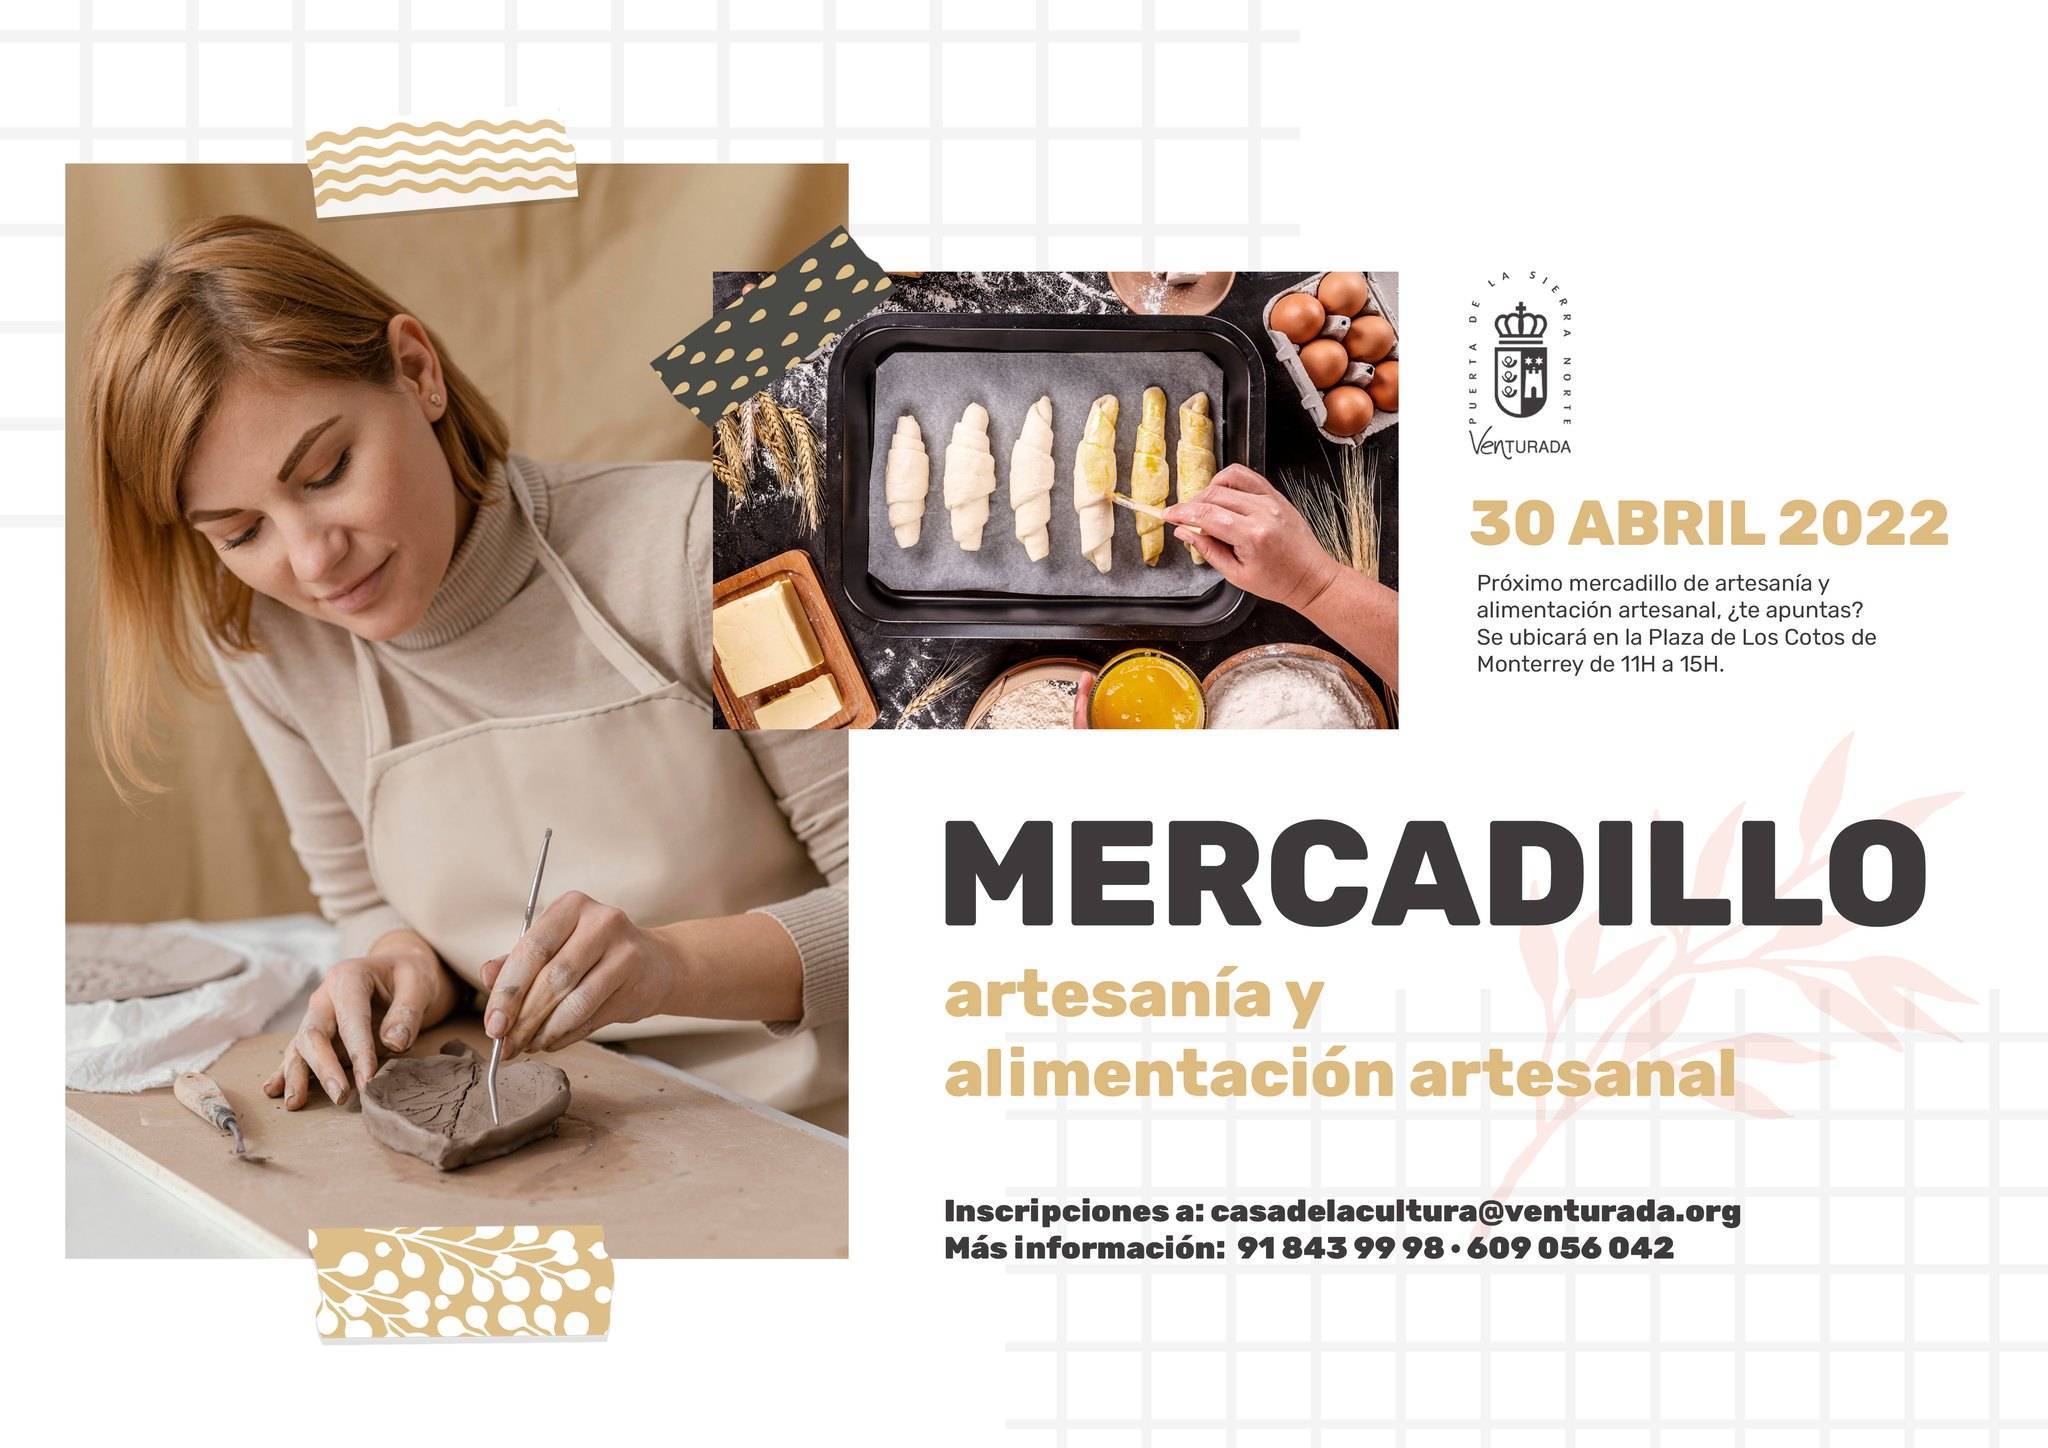 Mercadillo de artesanía y alimentación artesanal (abril 2022) - Venturada (Madrid)